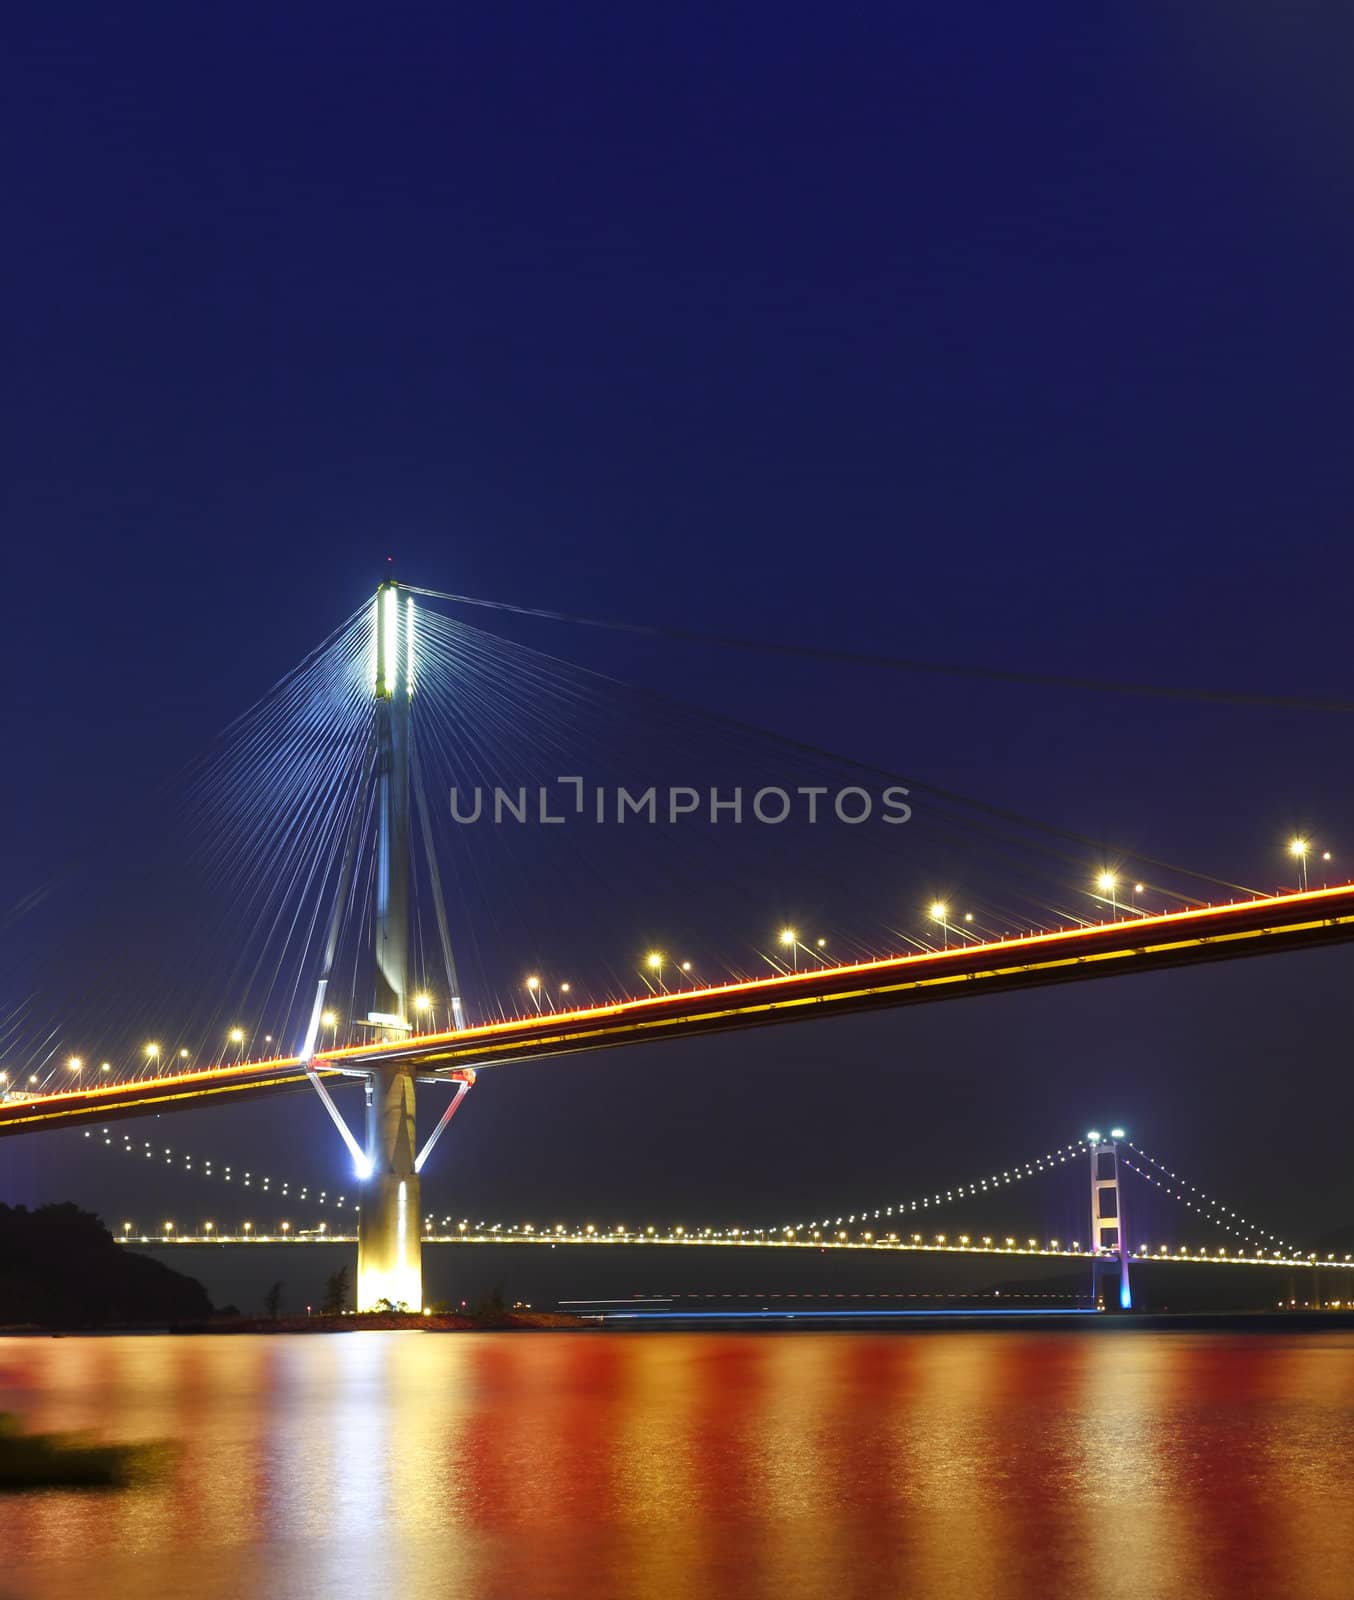 Ting Kau Bridge and Tsing ma Bridge at evening, in Hong Kong